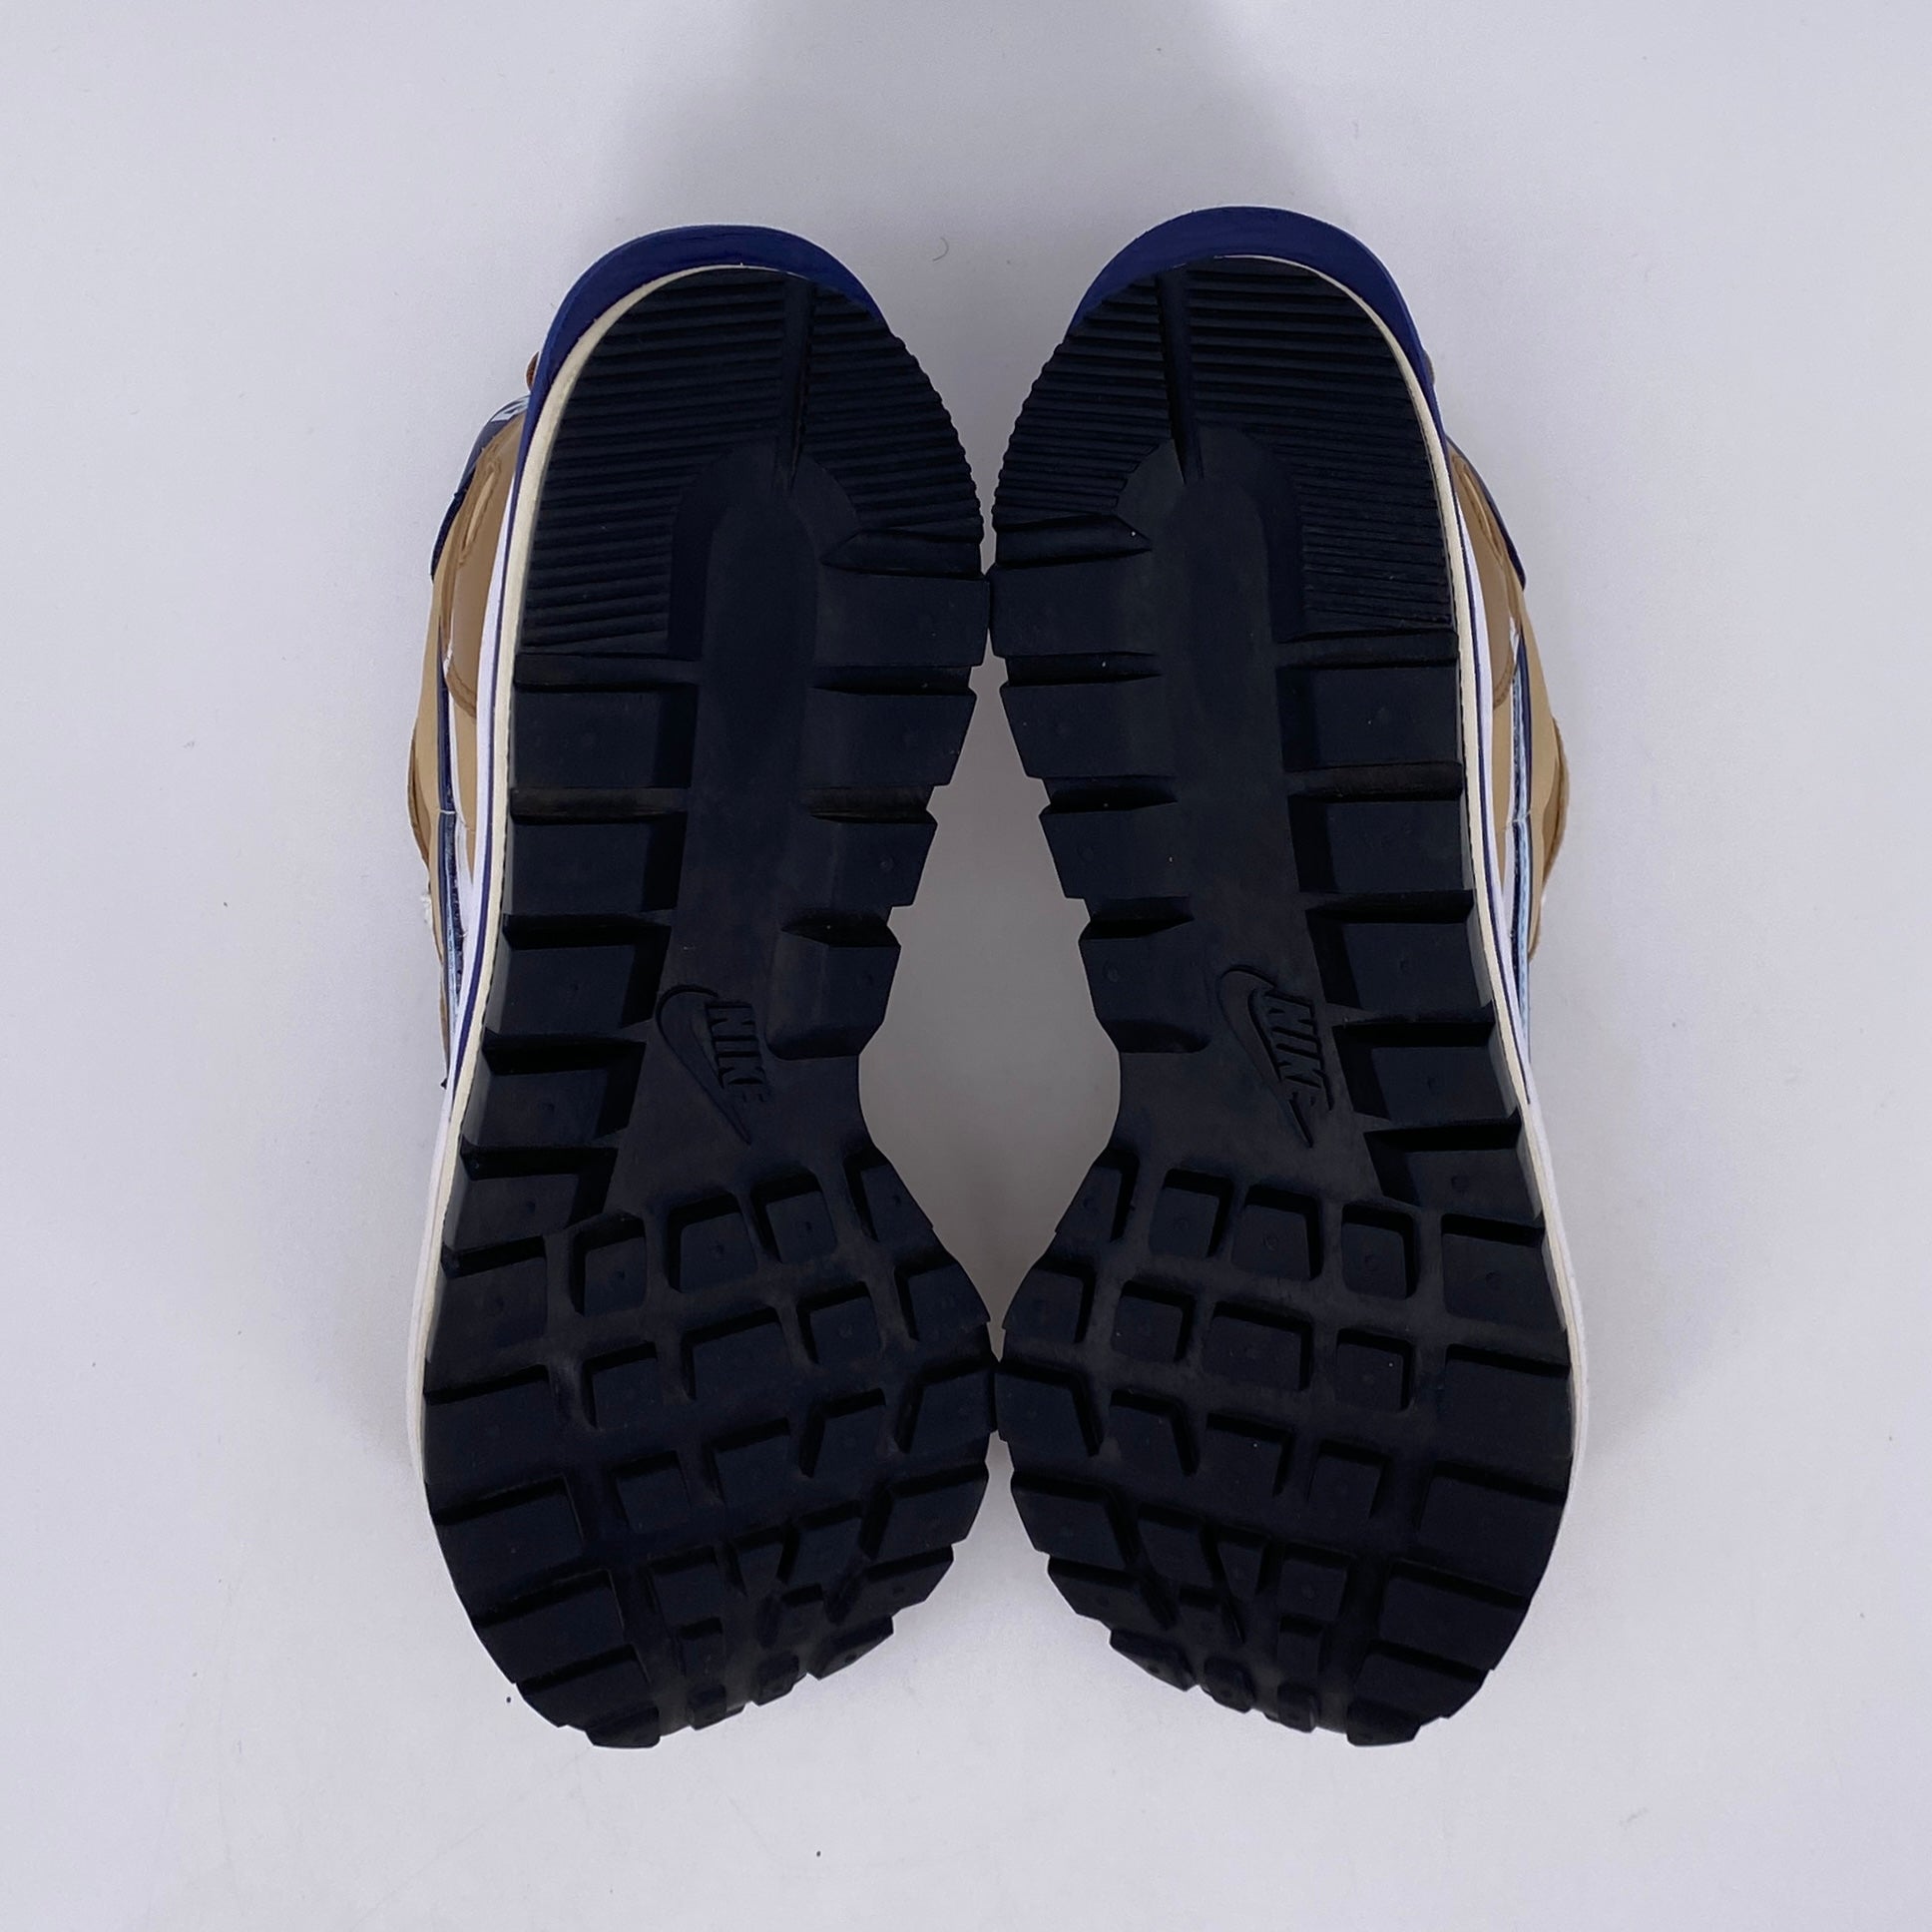 Nike Vaporwaffle / Sacai "Sesame Blue Void" 2021 Used Size 9